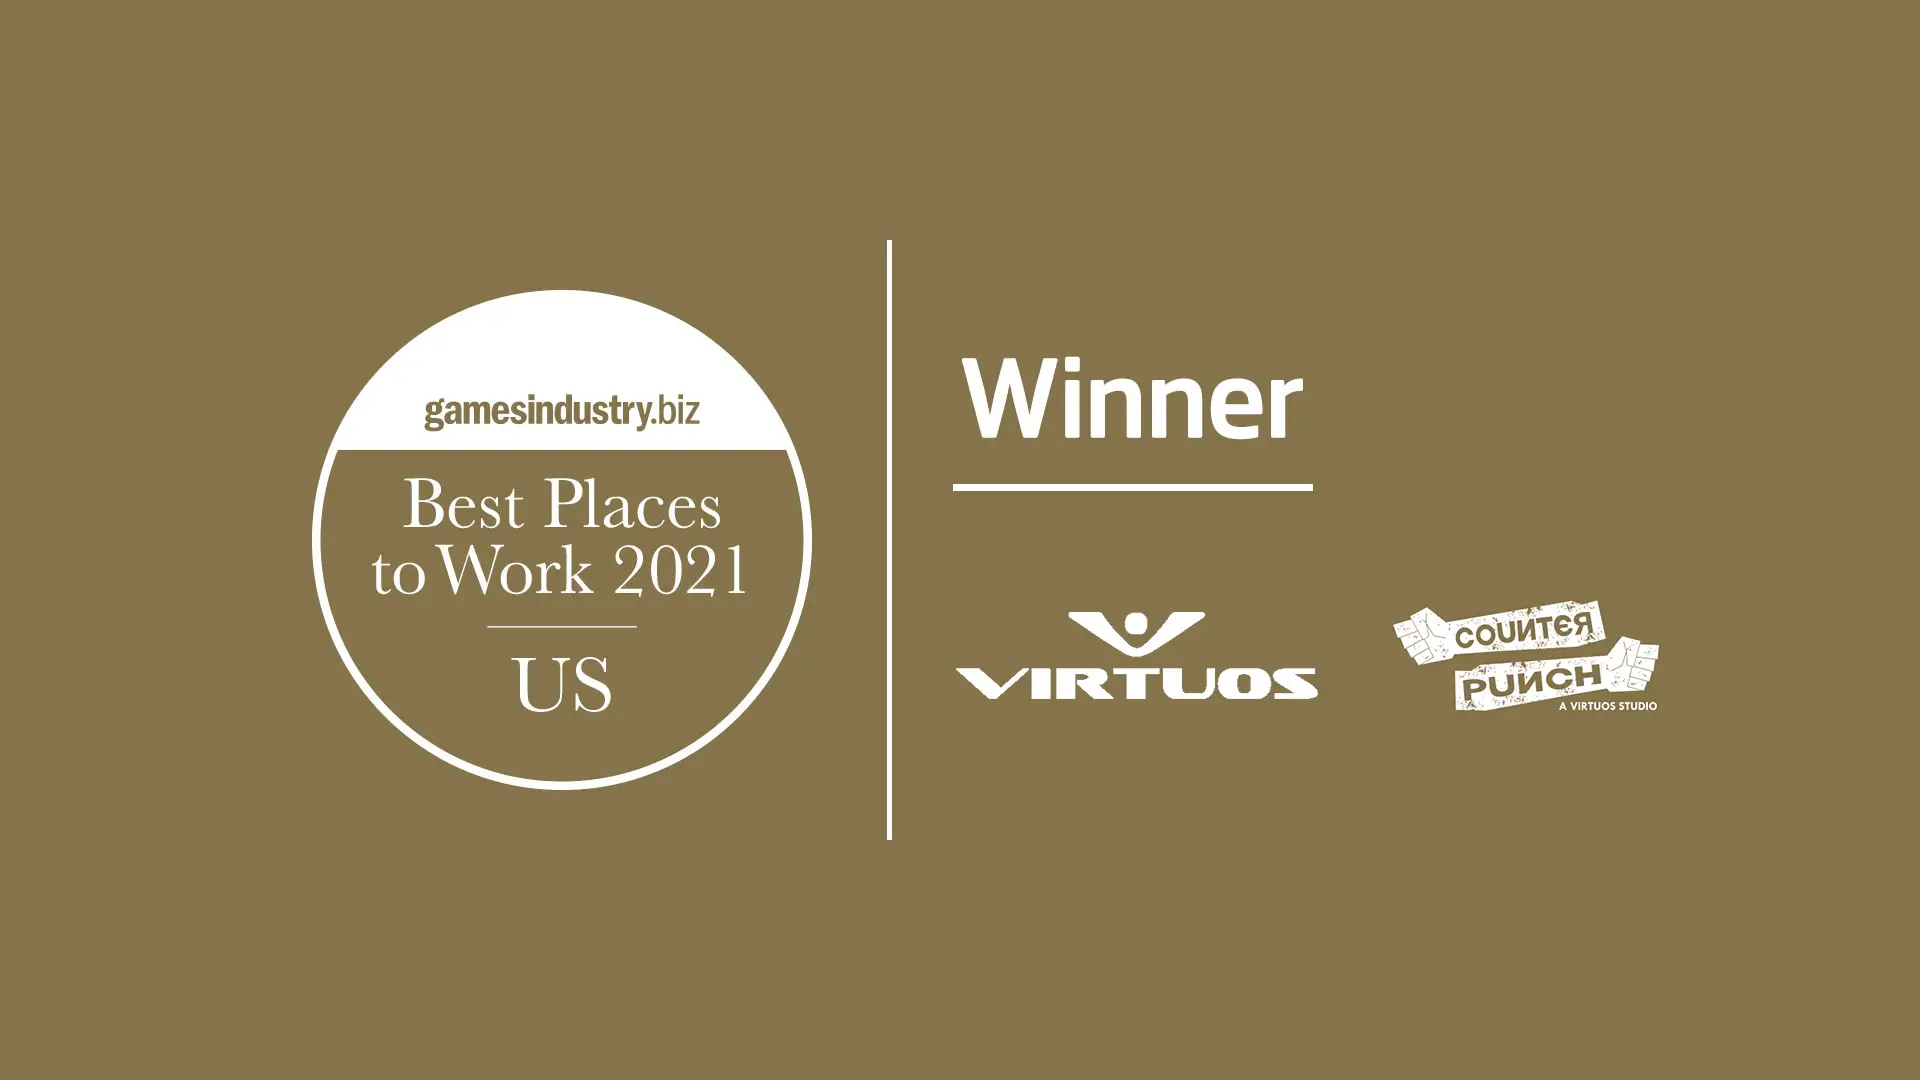 维塔士北美及CounterPunch工作室荣获“2021年GamesIndustry.biz全美最佳办公场所奖”